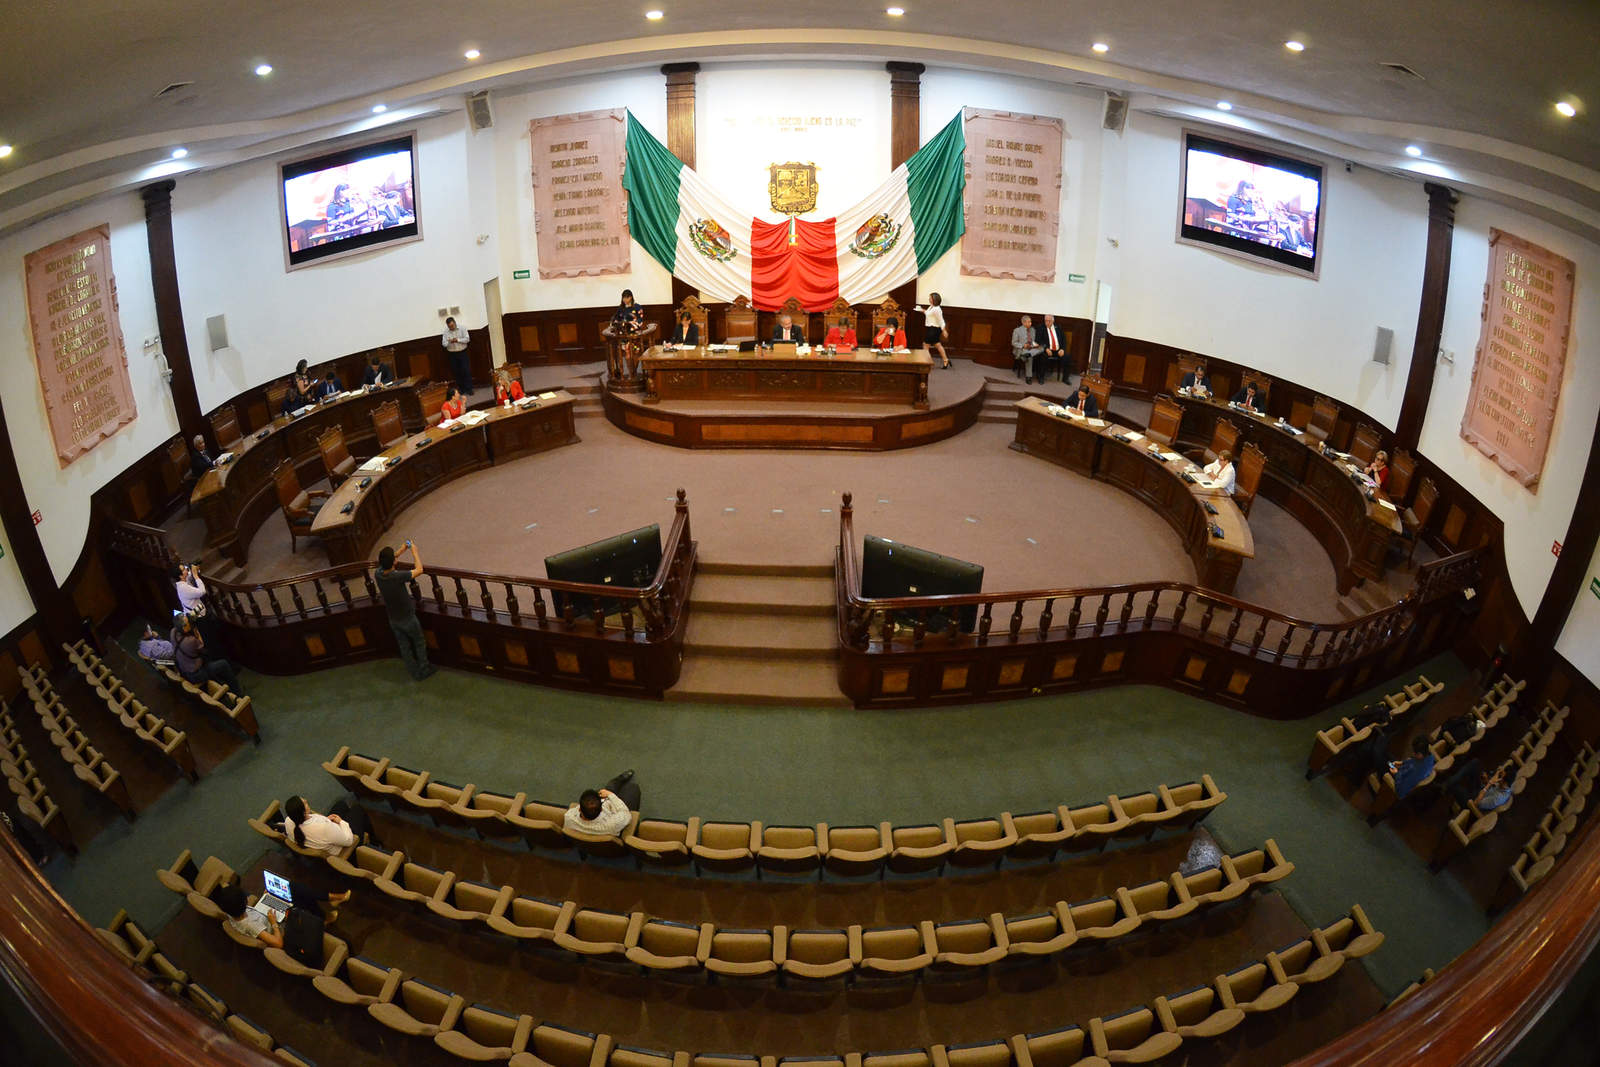 Tras posponerse de forma abrupta la sesión programada el 21 de noviembre, no se ha informado de la reasignación de fecha para continuar con el trabajo legislativo. (ARCHIVO)